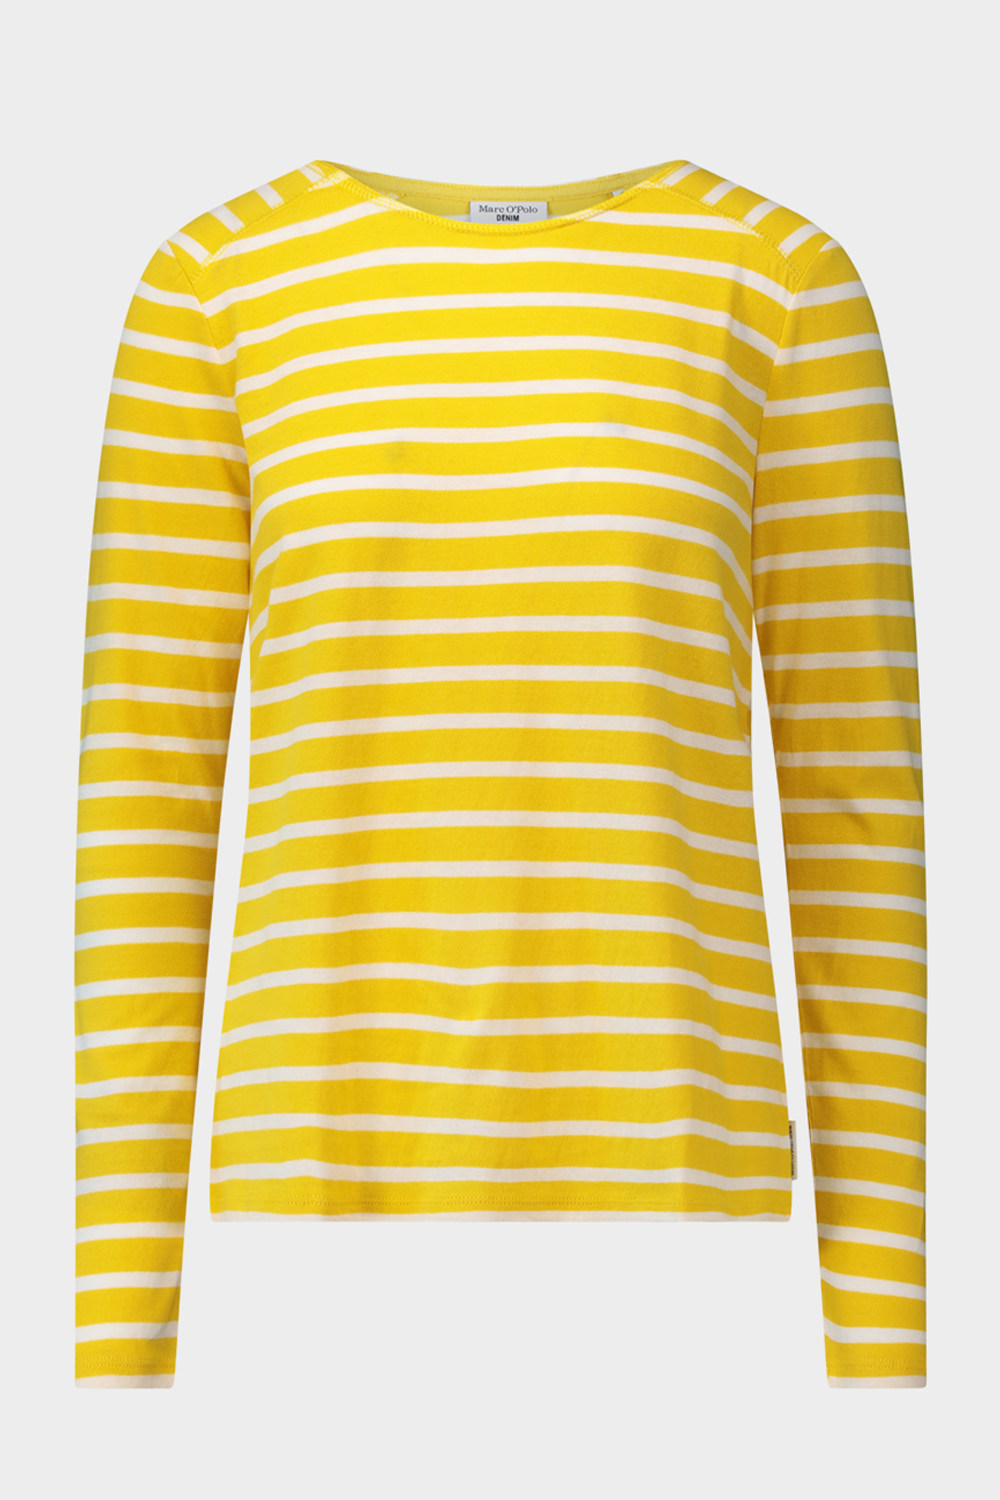 חולצת טי שירט לנשים בצבע צהוב